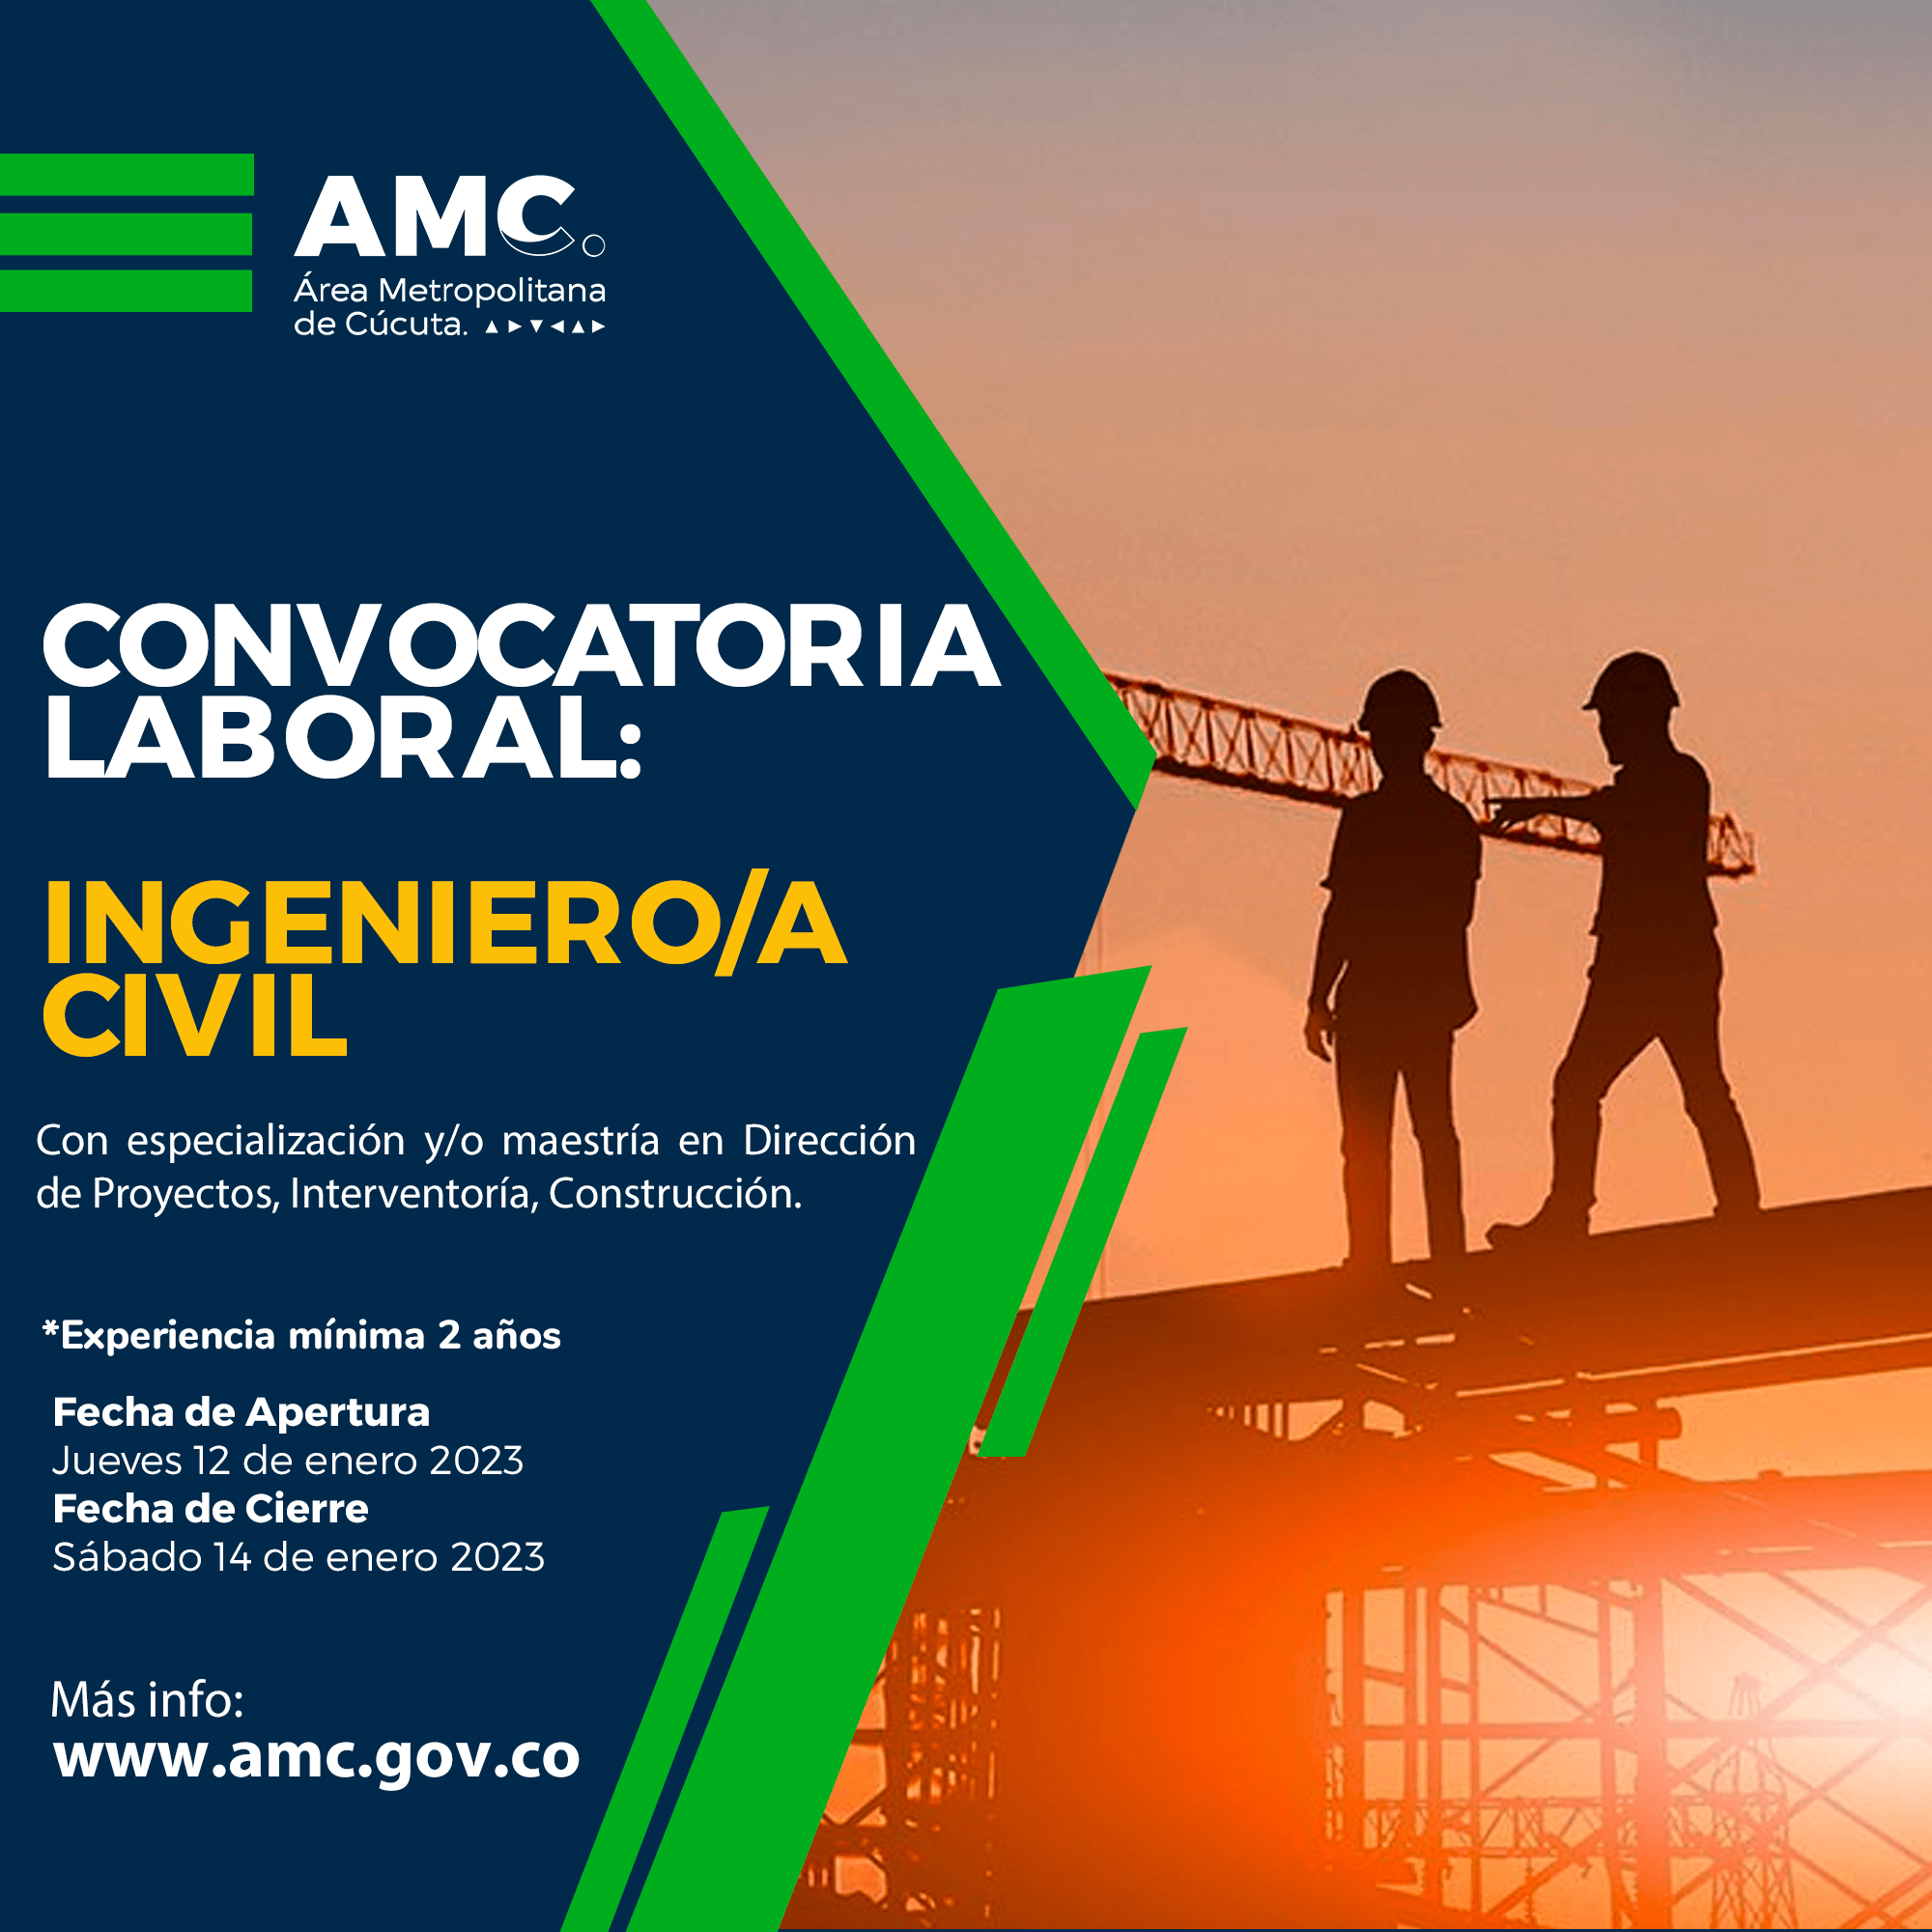 Convocatoria laboral para Ingeniero Civil en el Área Metropolitana de Cúcuta